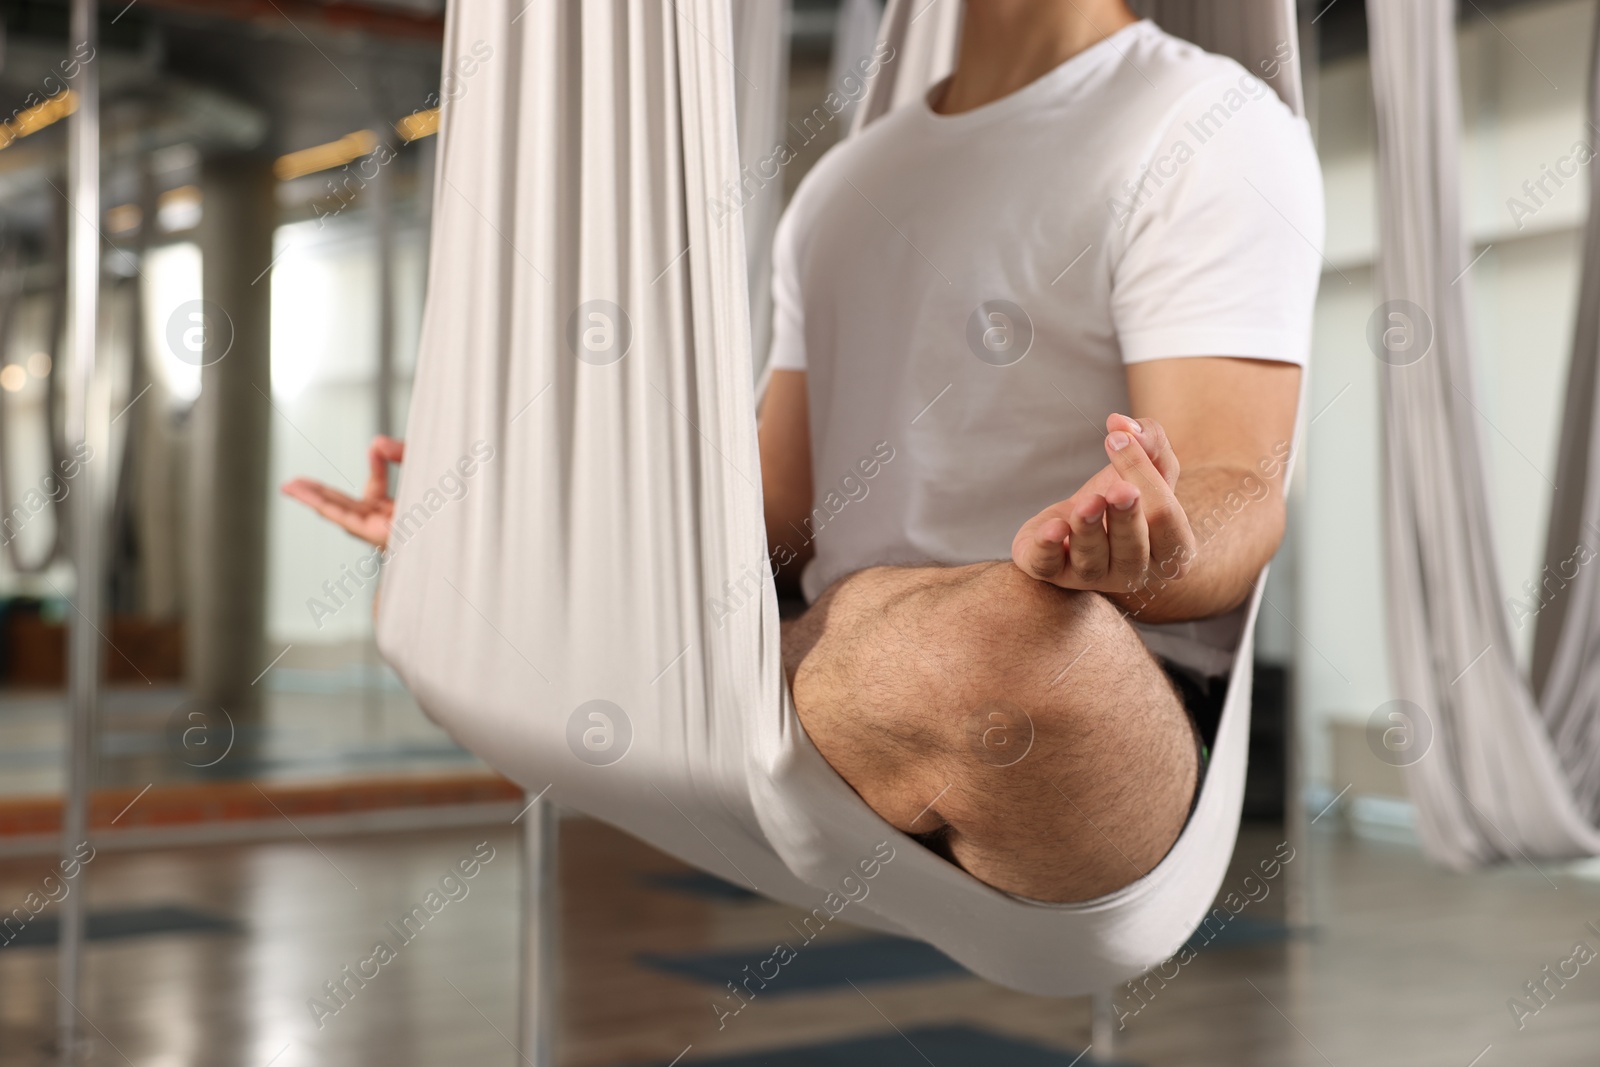 Photo of Man meditating in fly yoga hammock indoors, closeup